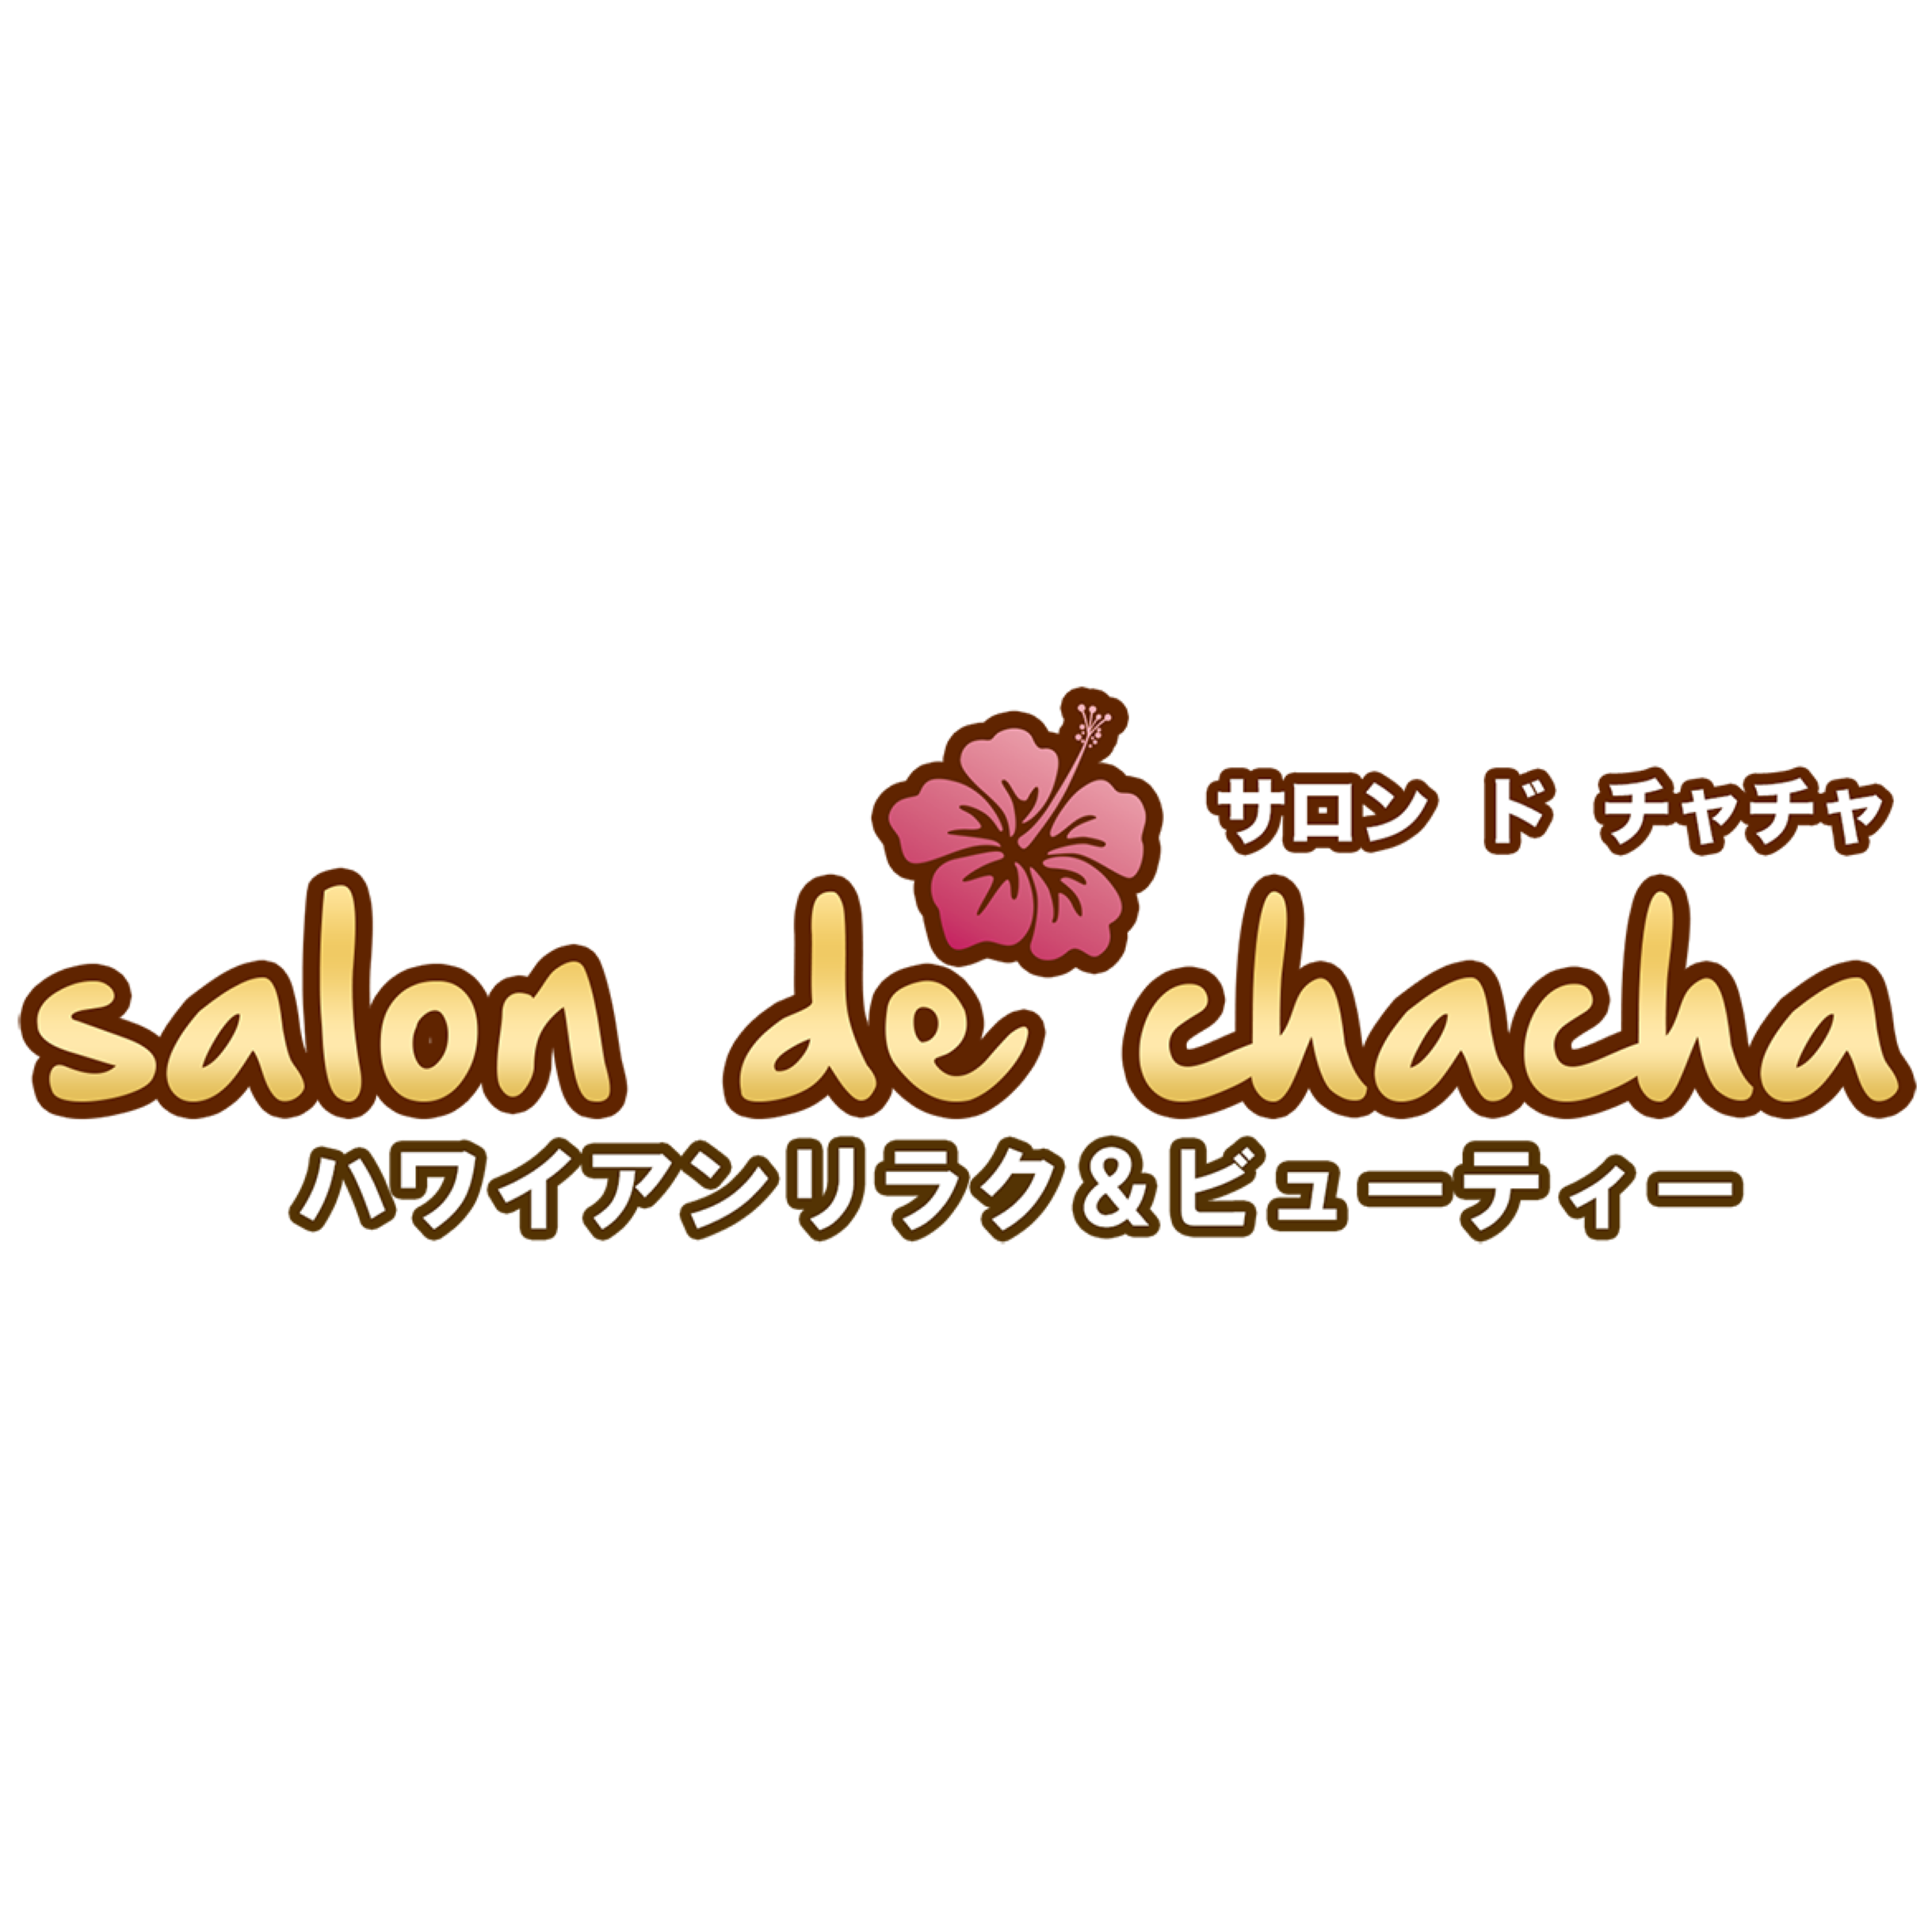 Salon de chacha 渋谷本店〜ハワイアンリラク＆ビューティー〜 渋谷区 03-6712-6731